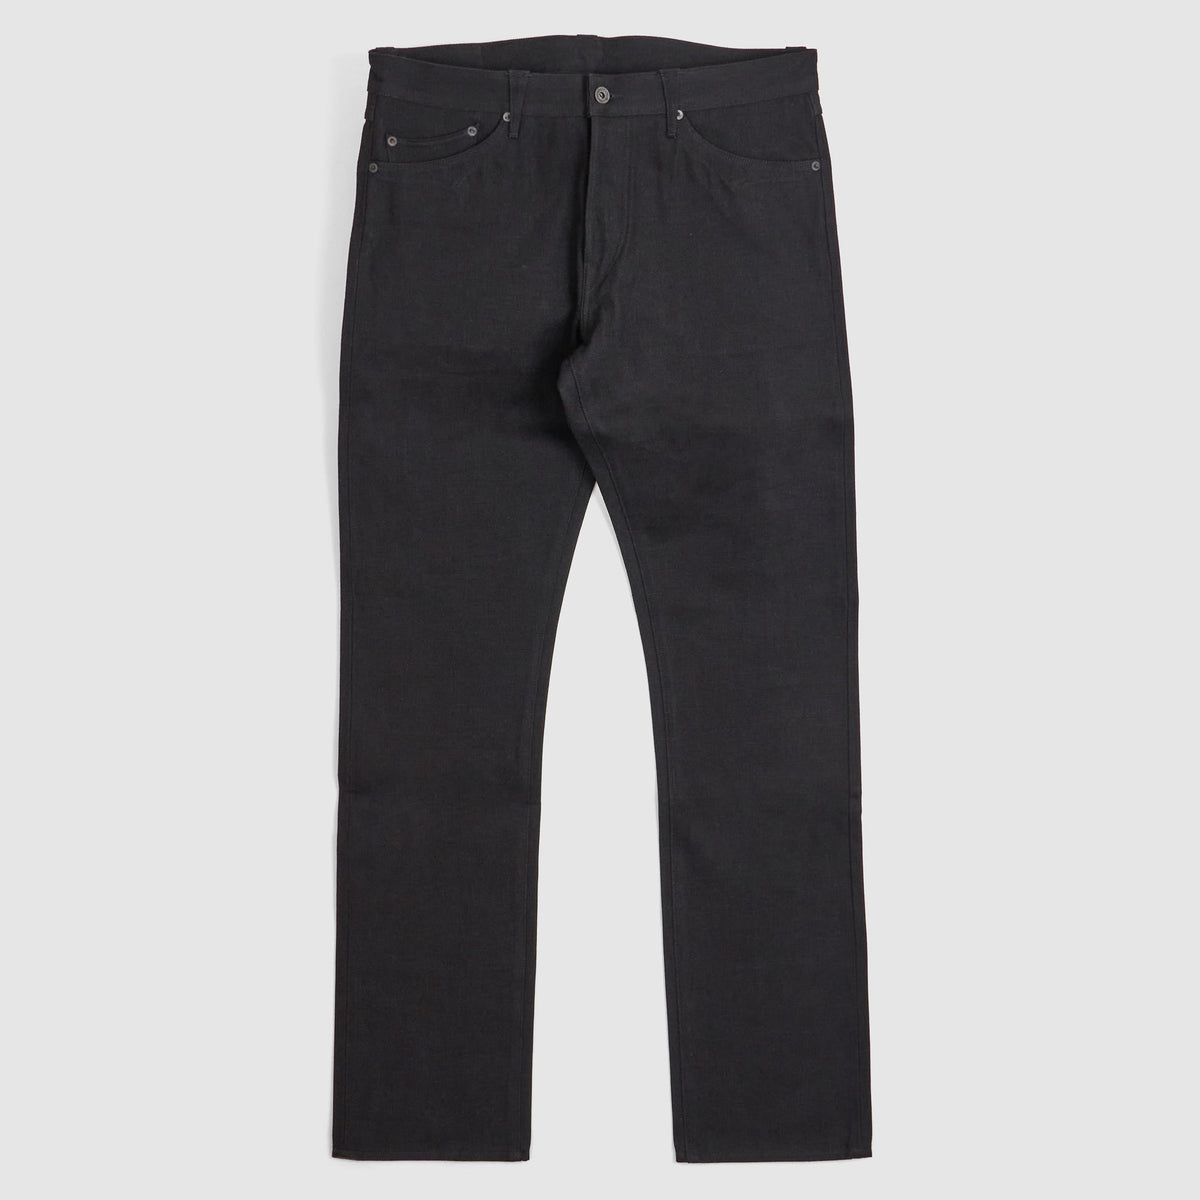 Stevenson Overall CO. Black Denim Western Denim Jeans